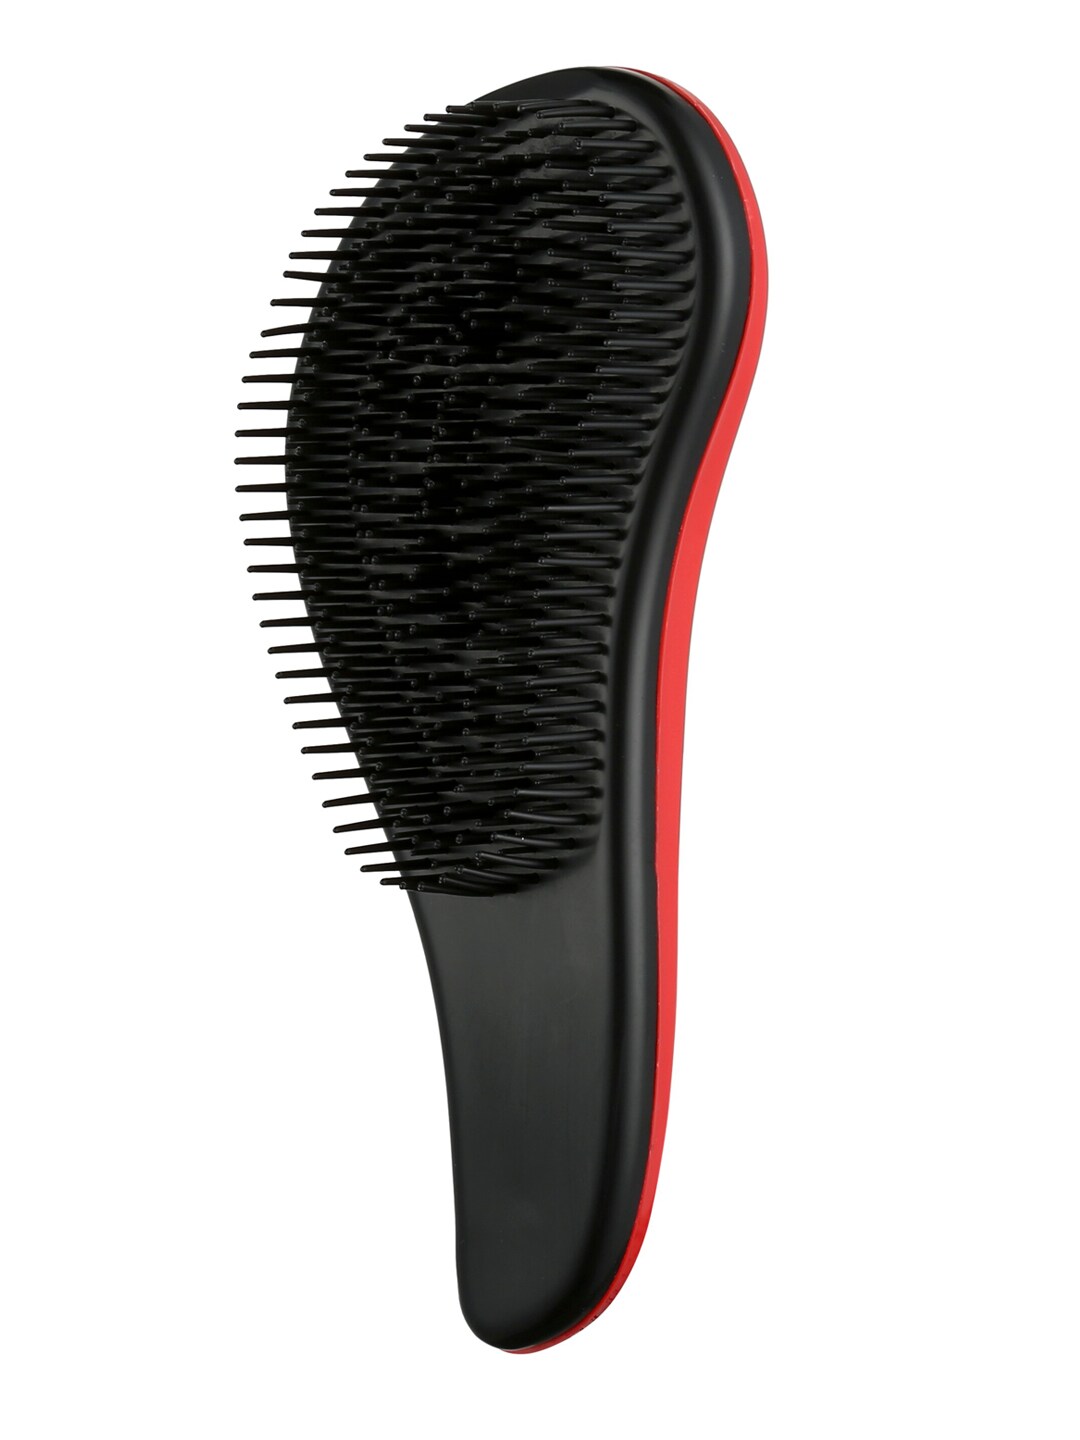 Beaute Secrets Unisex Black & Red Detangler Hair Brush Comb Price in India